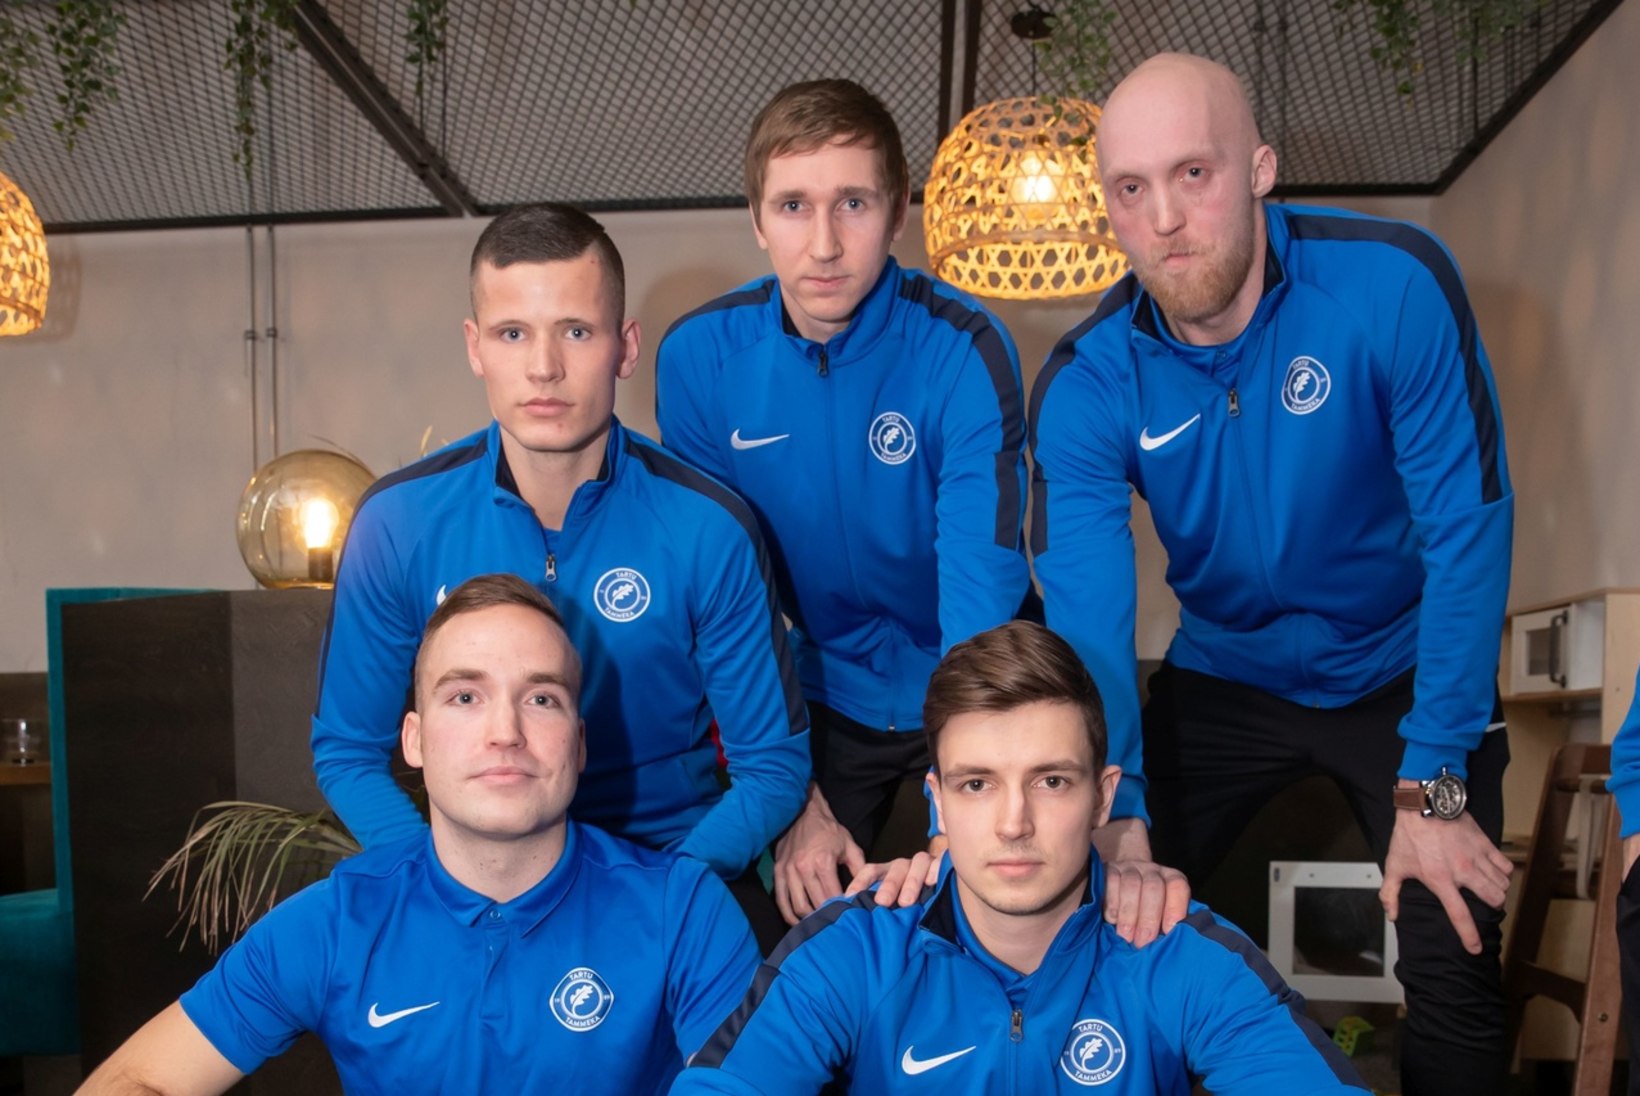 TÖÖ EI SEGA MÄNGU: Eesti jalgpalli kõrgliigas ajavad palli taga nii tippjuhid, juristid kui ka IT-mehed